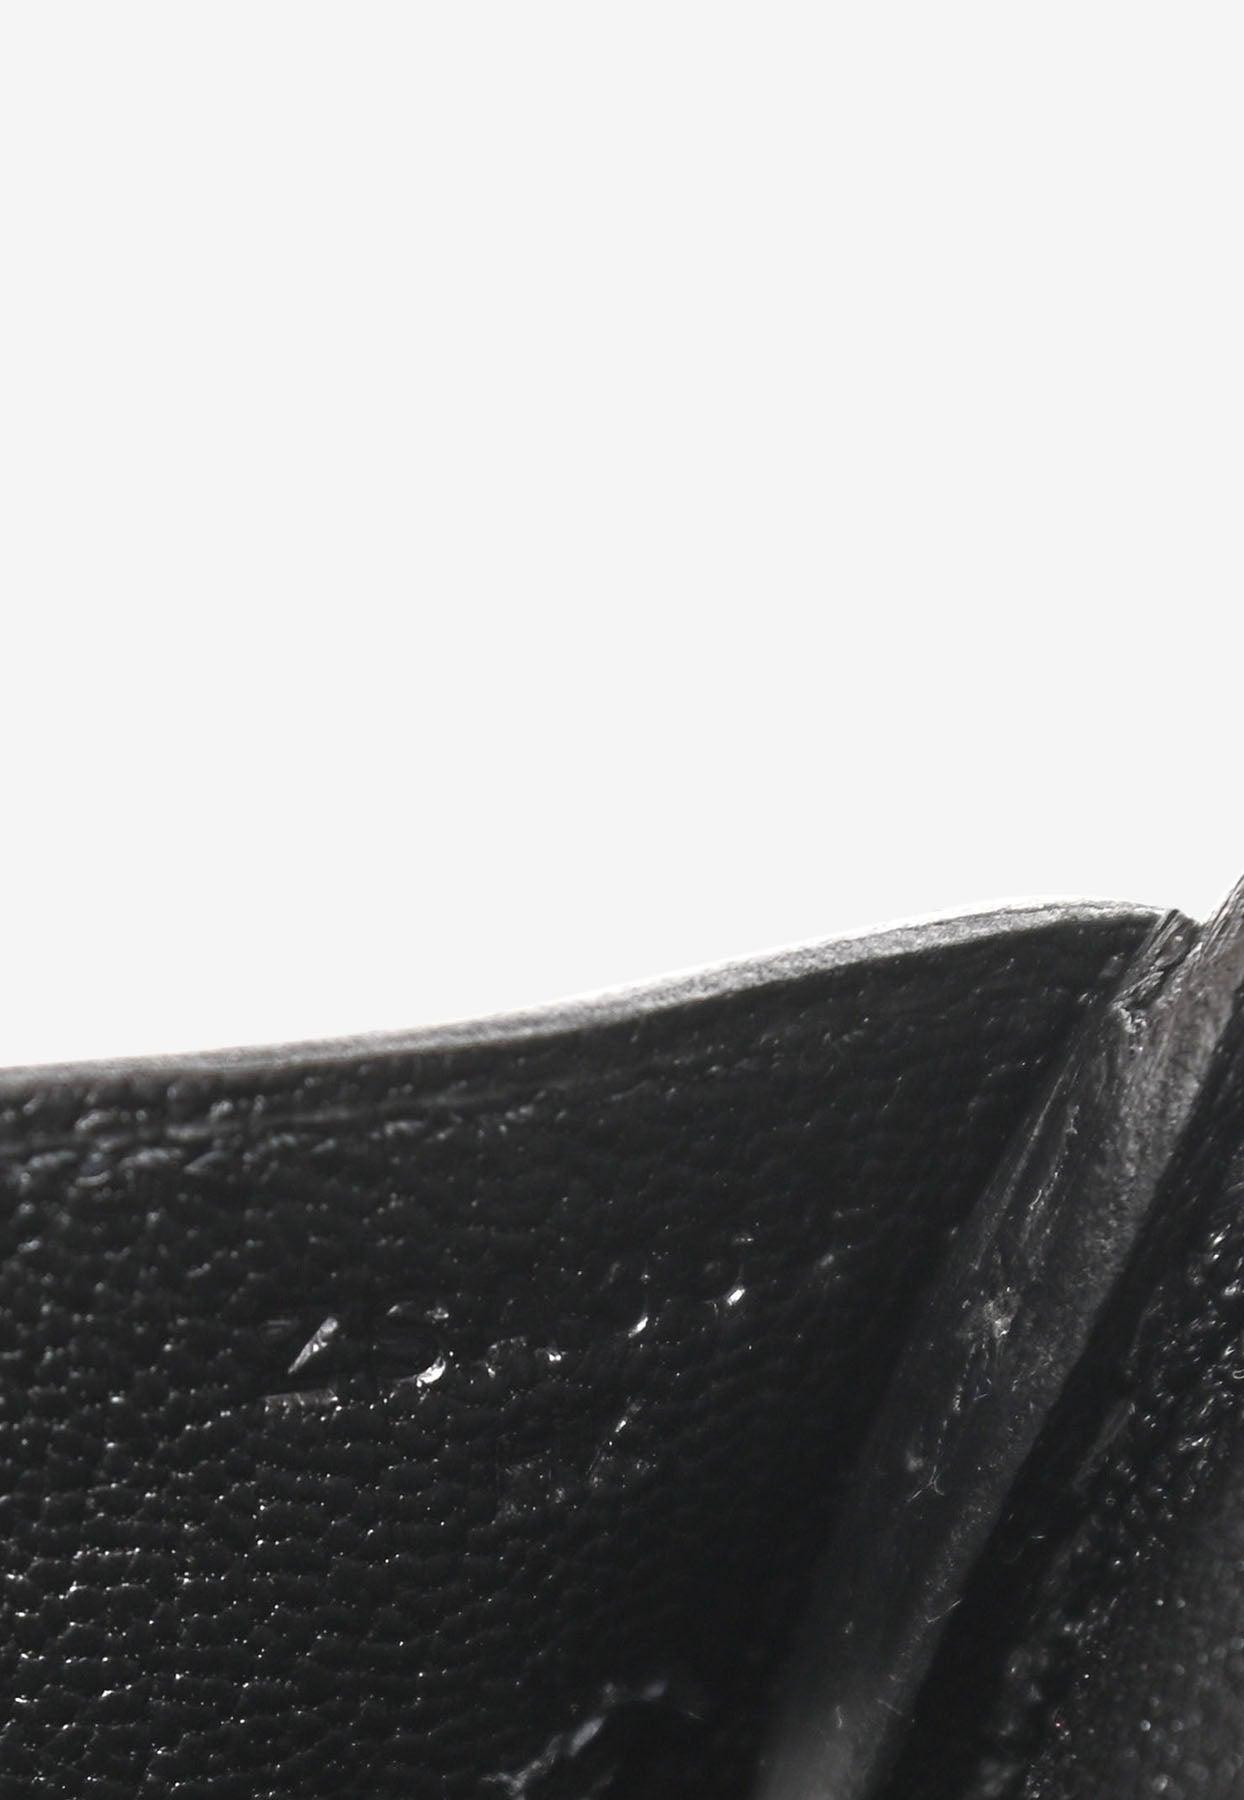 Hermès Fuchsia And Black Ostrich HSS Birkin 30 Palladium Hardware